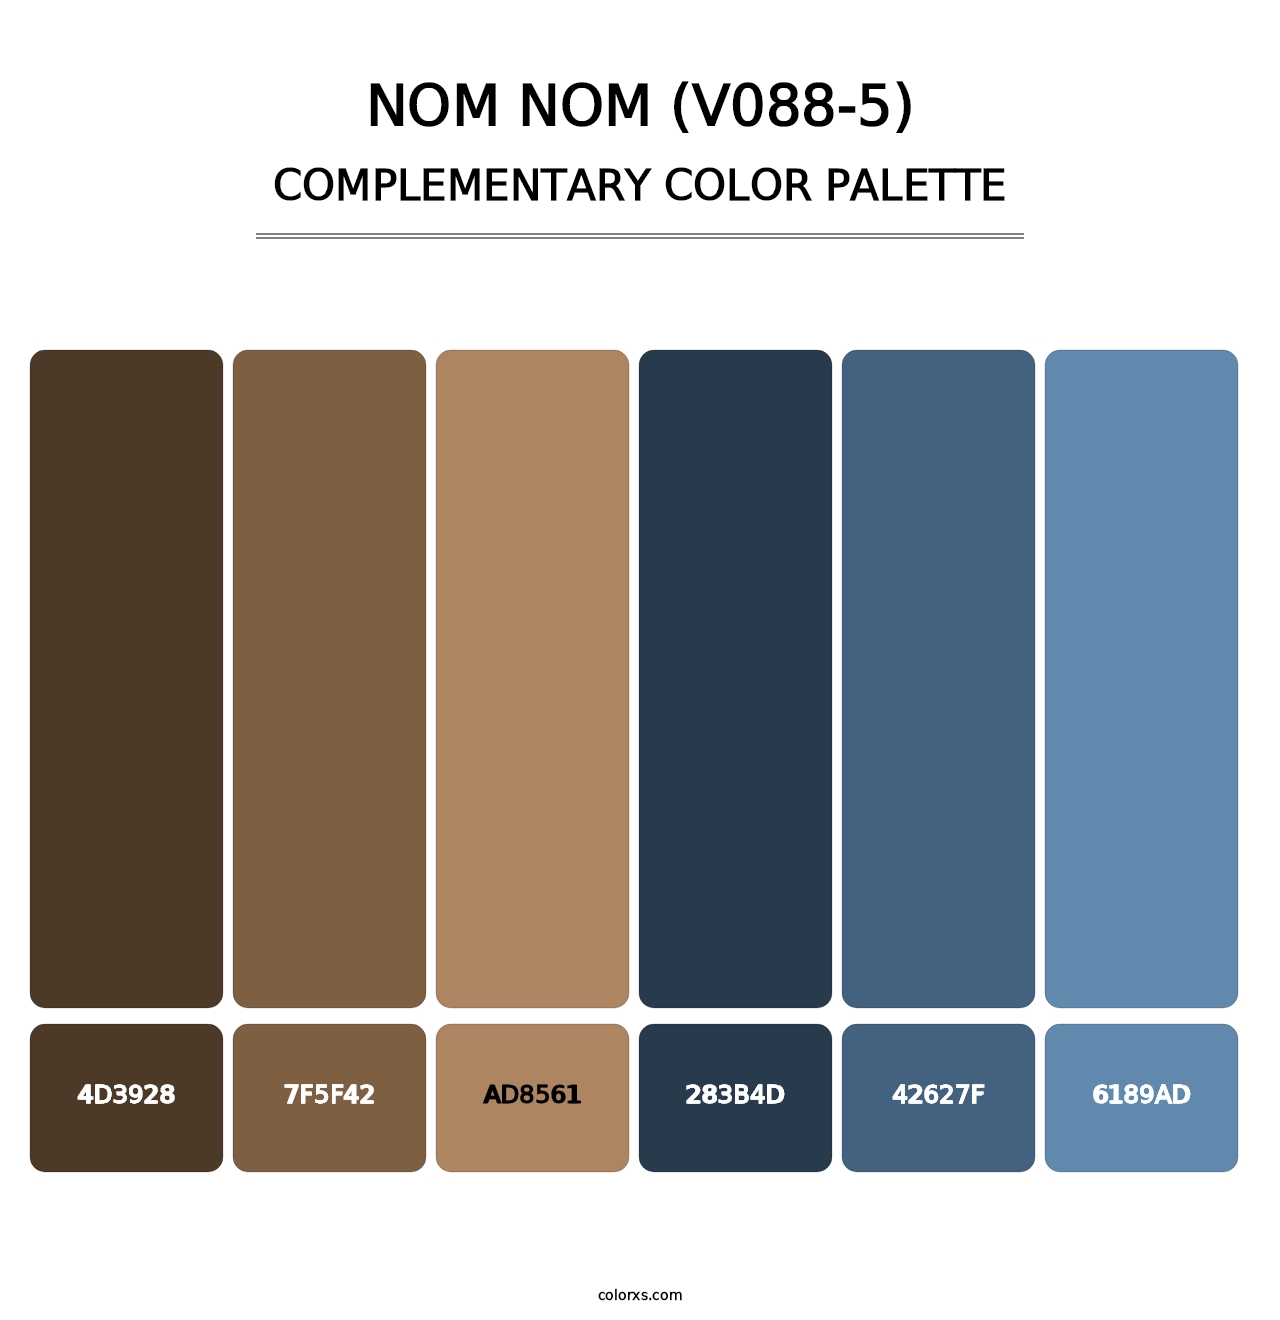 Nom Nom (V088-5) - Complementary Color Palette